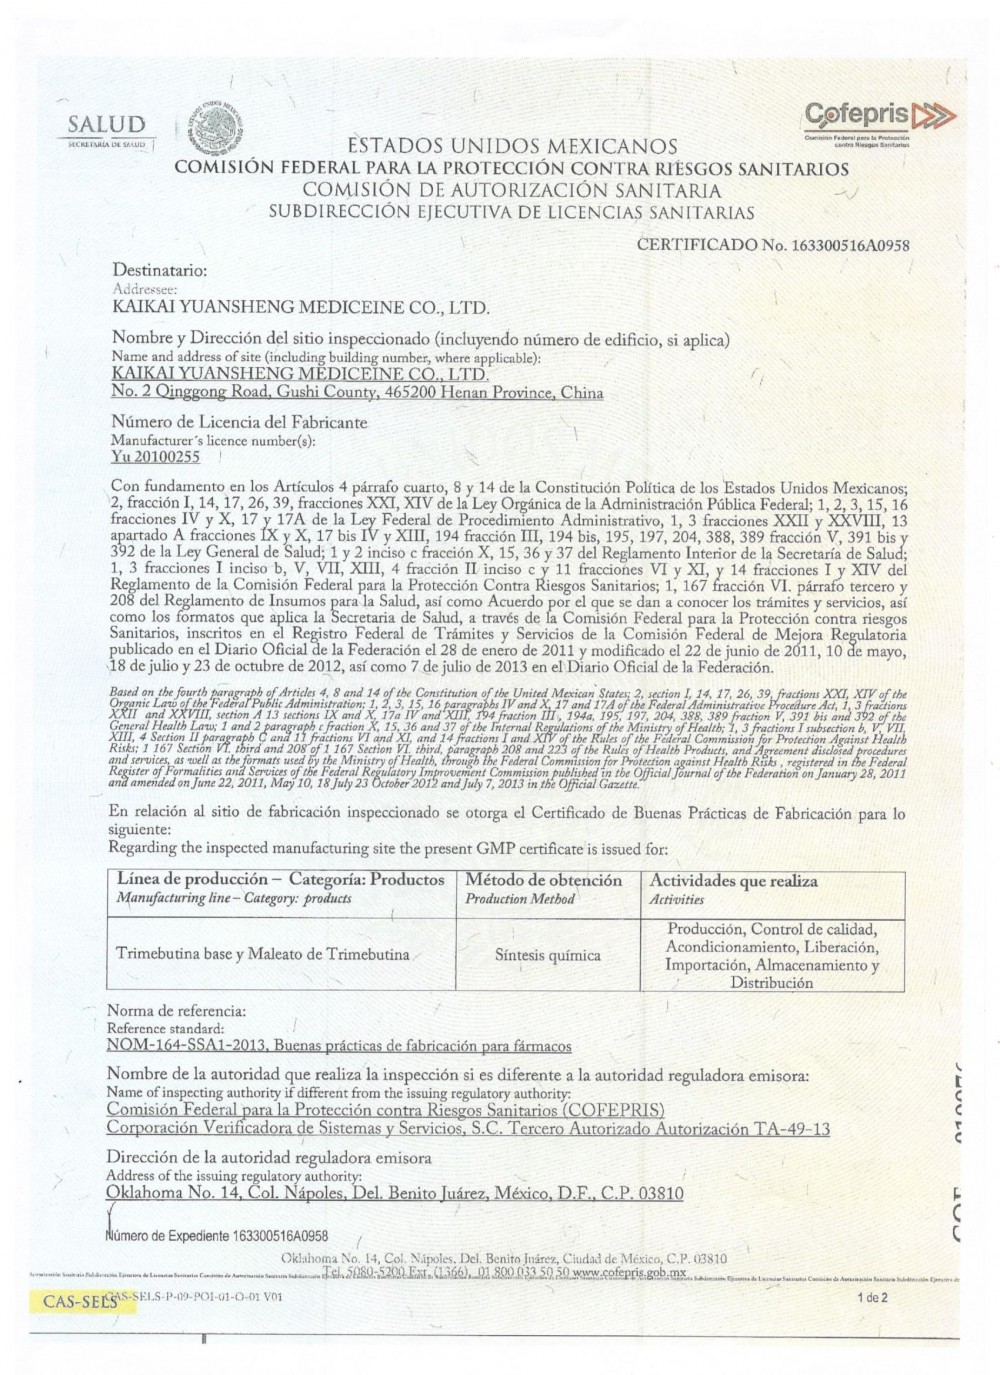 Cofepris GMP Certificate